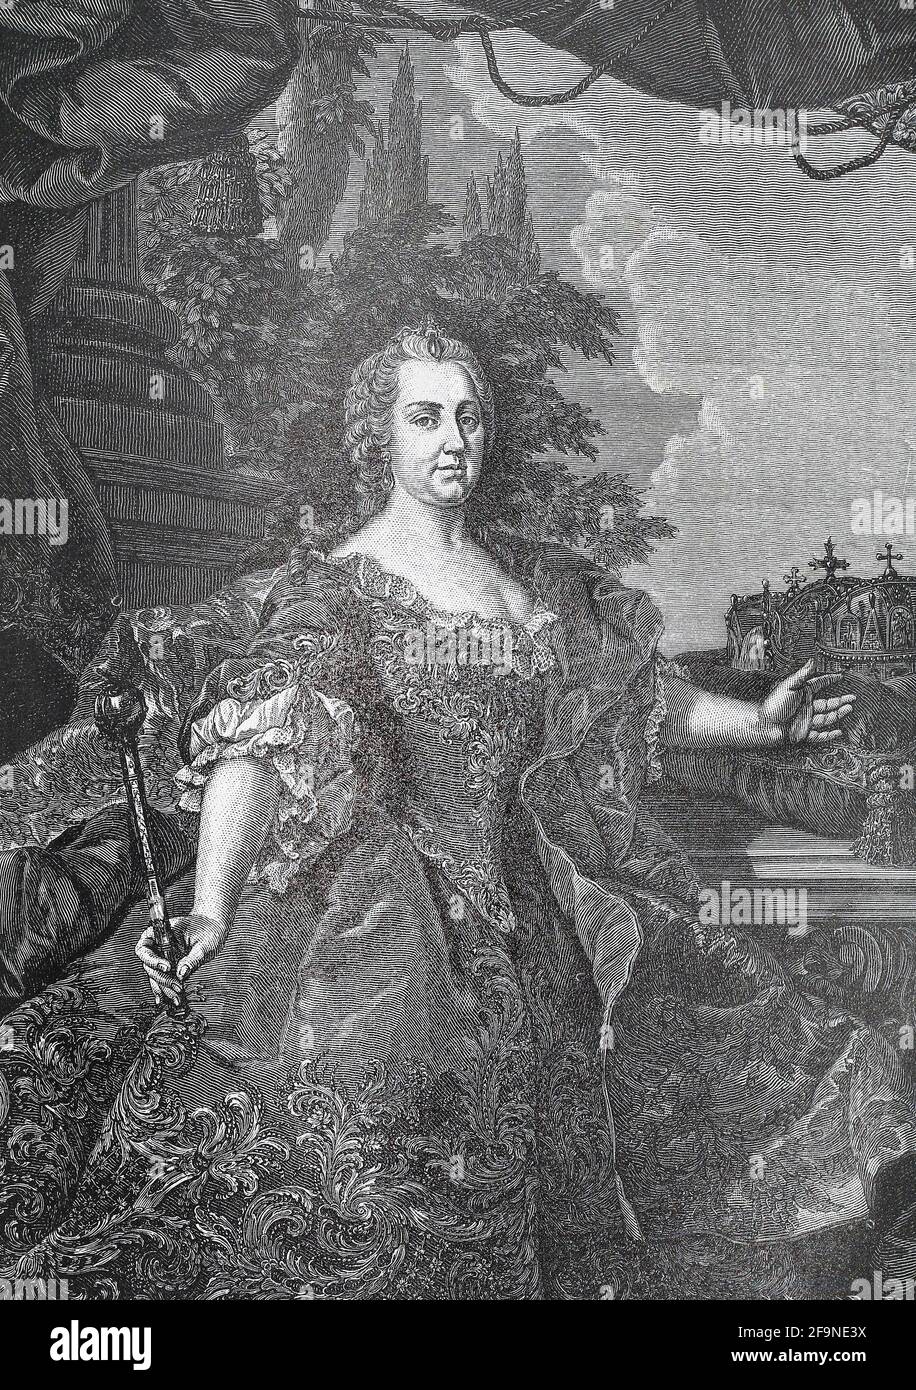 Maria Theresia Walburga Amalia Christina (Maria Theresia; 13. Mai 1717 – 29. November 1780) war die einzige weibliche Herrscherin der habsburgischen Herrschaften und regierte von 1740 bis zu ihrem Tod 1780. Sie war die Landesherrin von Österreich, Ungarn, Kroatien, Böhmen, Siebenbürgen, Mantua, Mailand, Lodomeria und Galicien, die österreichischen Niederlande und Parma. Durch Heirat war sie Herzogin von Lothringen, Großherzogin von Toskana und Heilige römische Kaiserin. Stockfoto